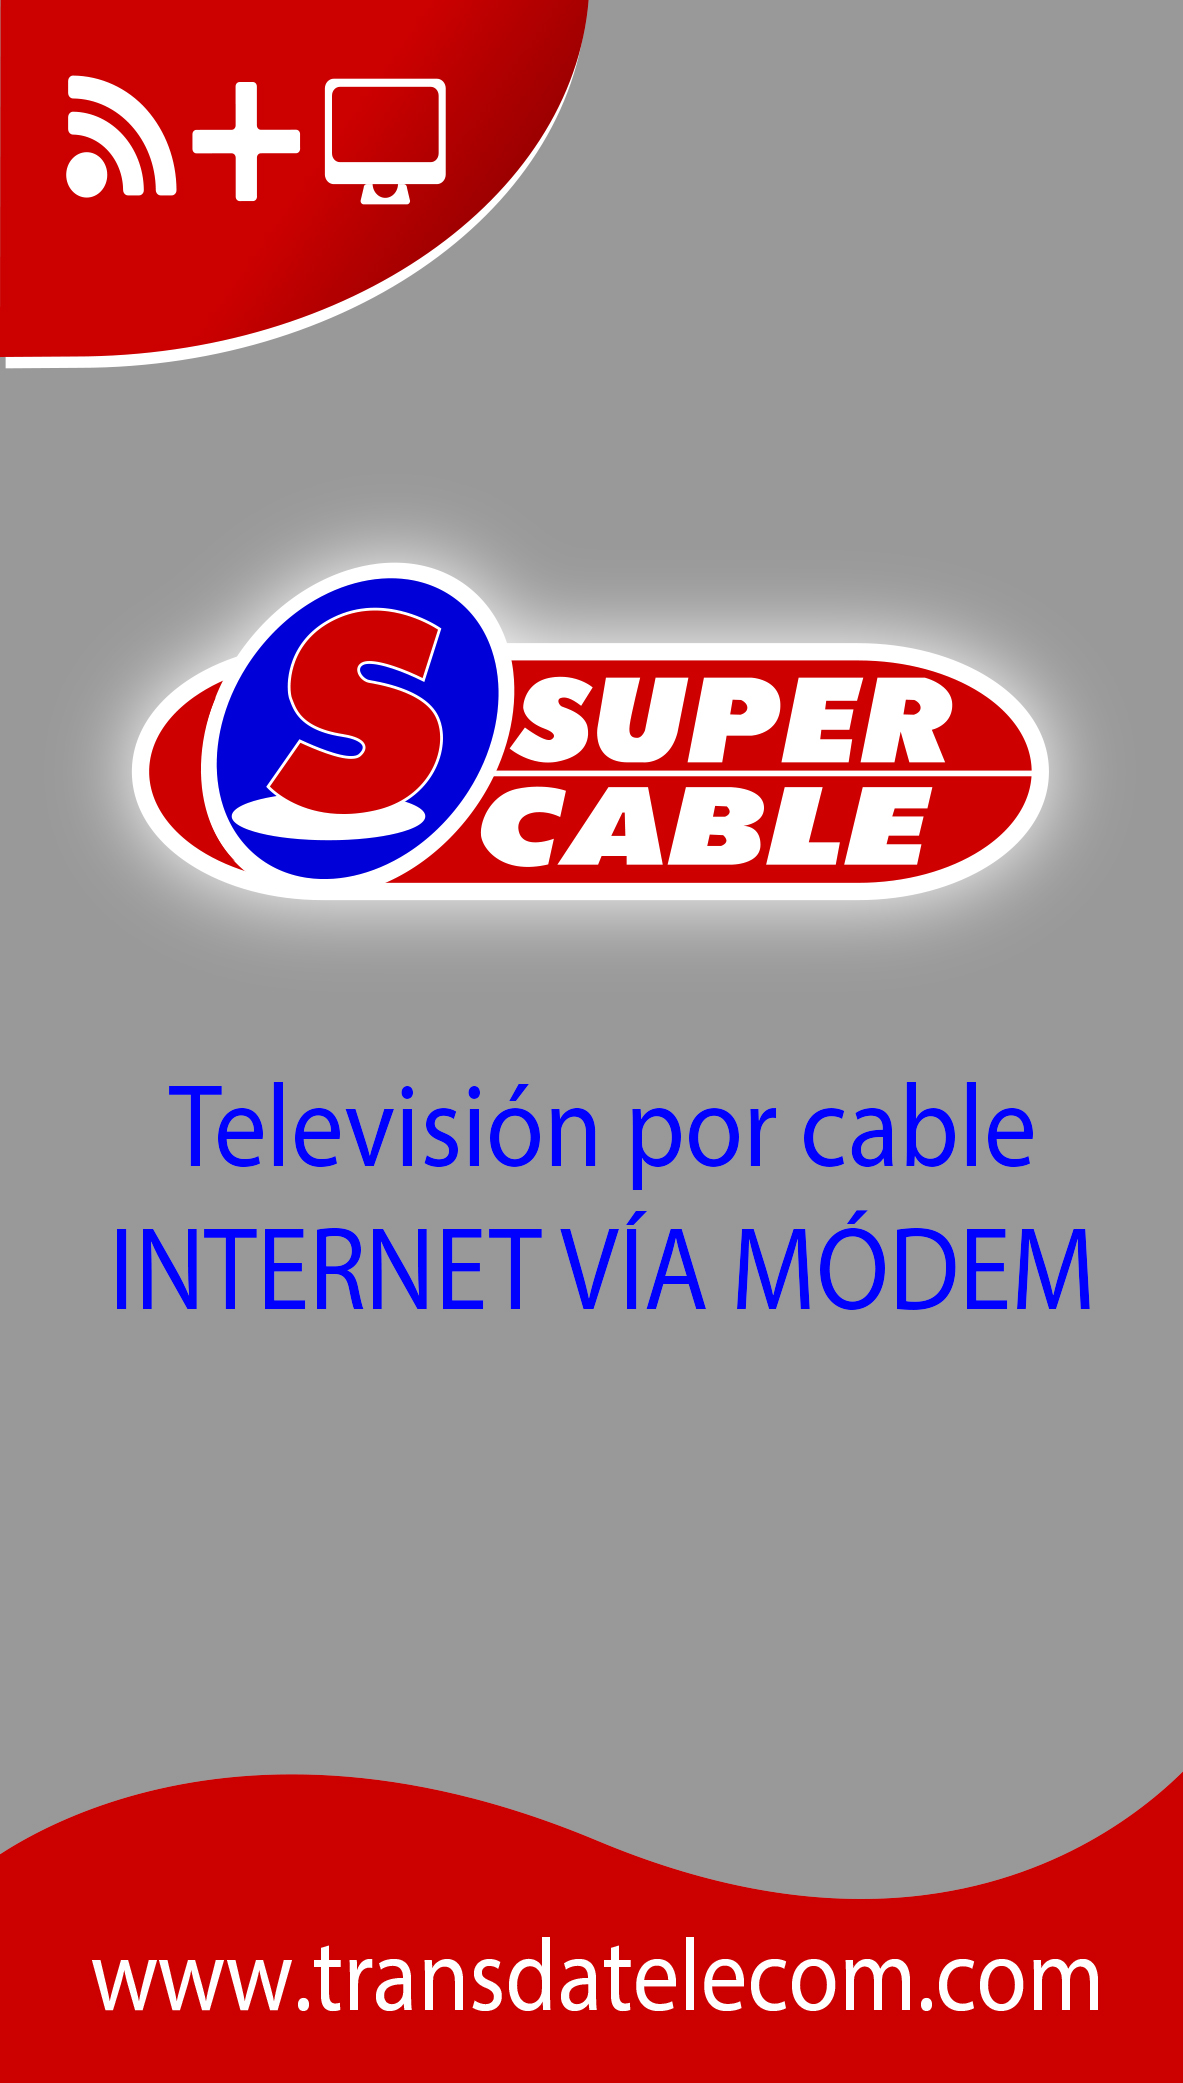 Super Cable